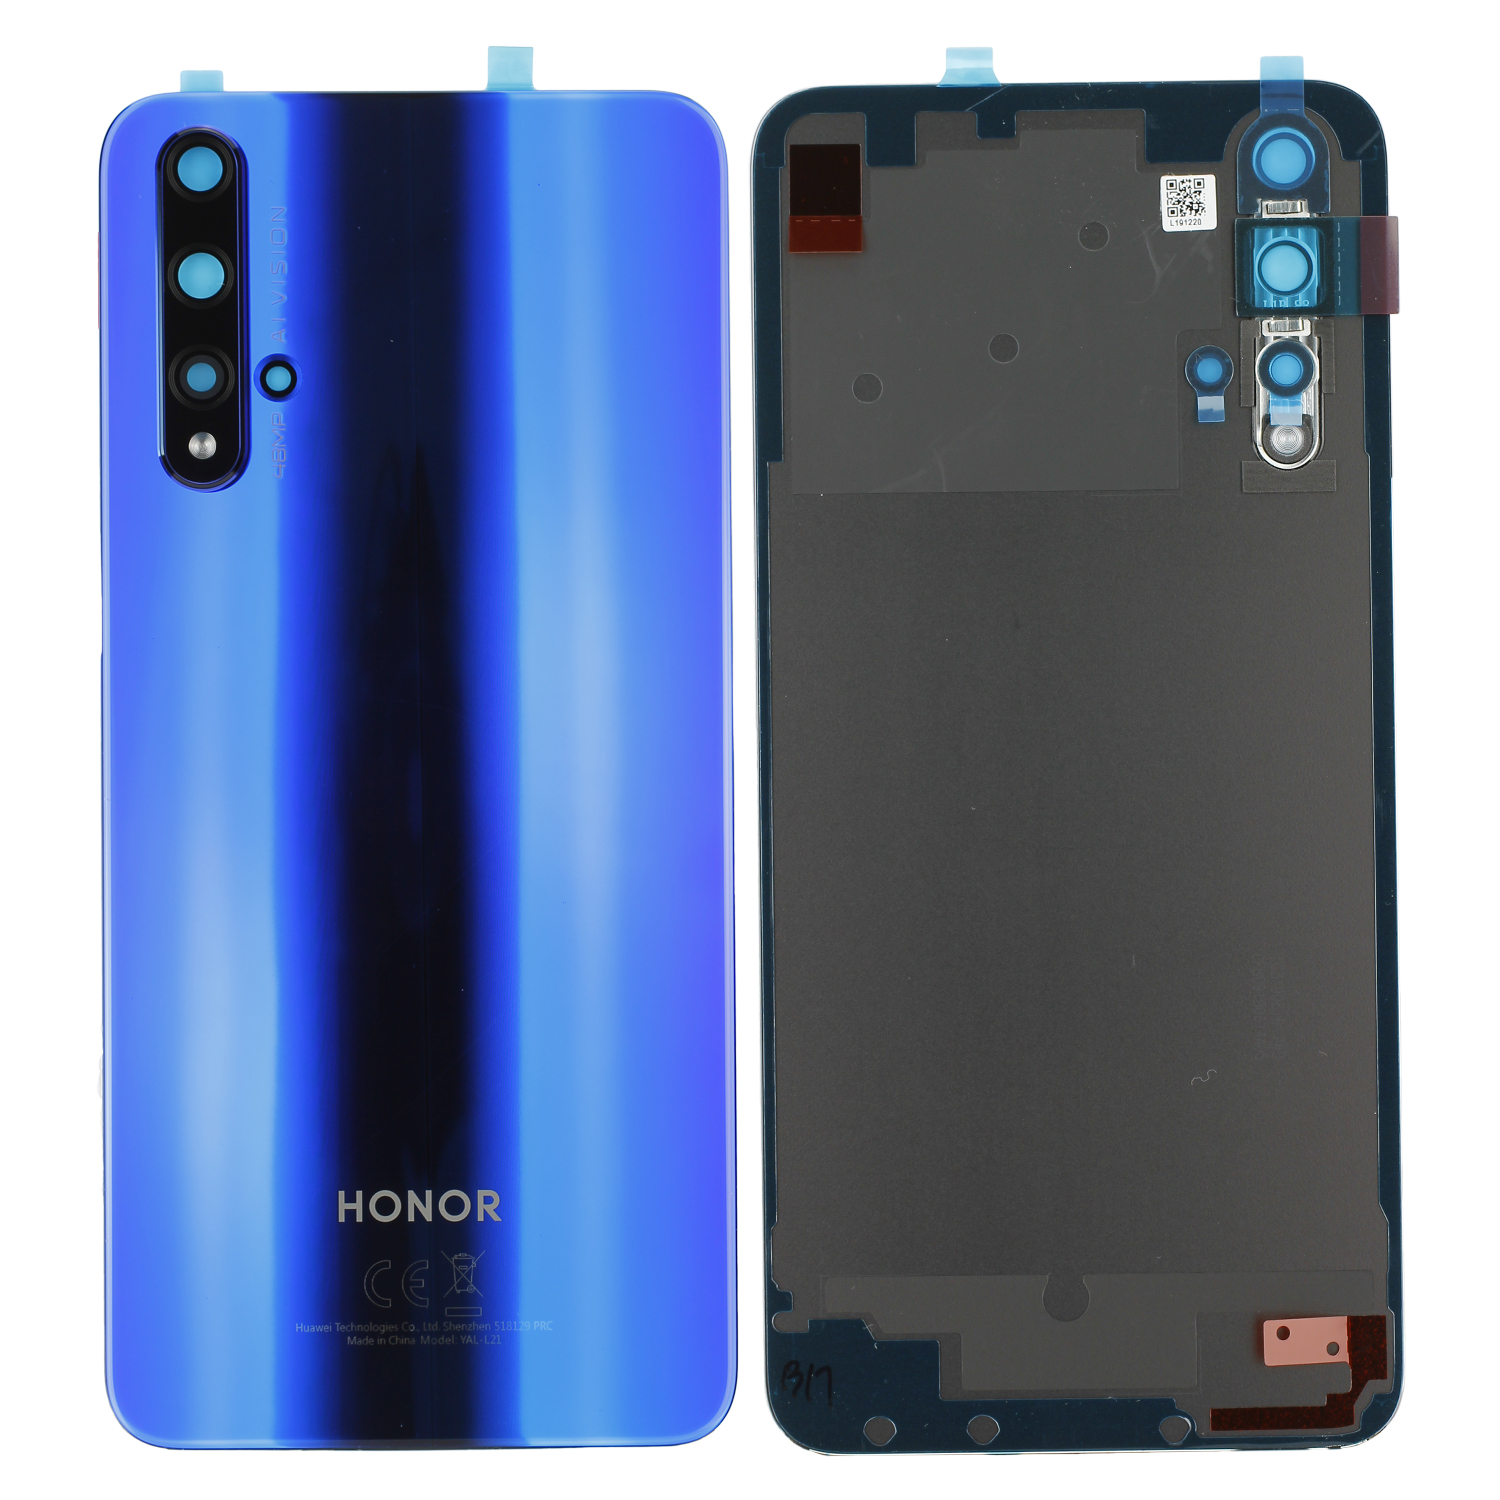 Huawei Honor 20 (YAL-AL00, YAL-L21) Battery Cover, Sapphire Blue